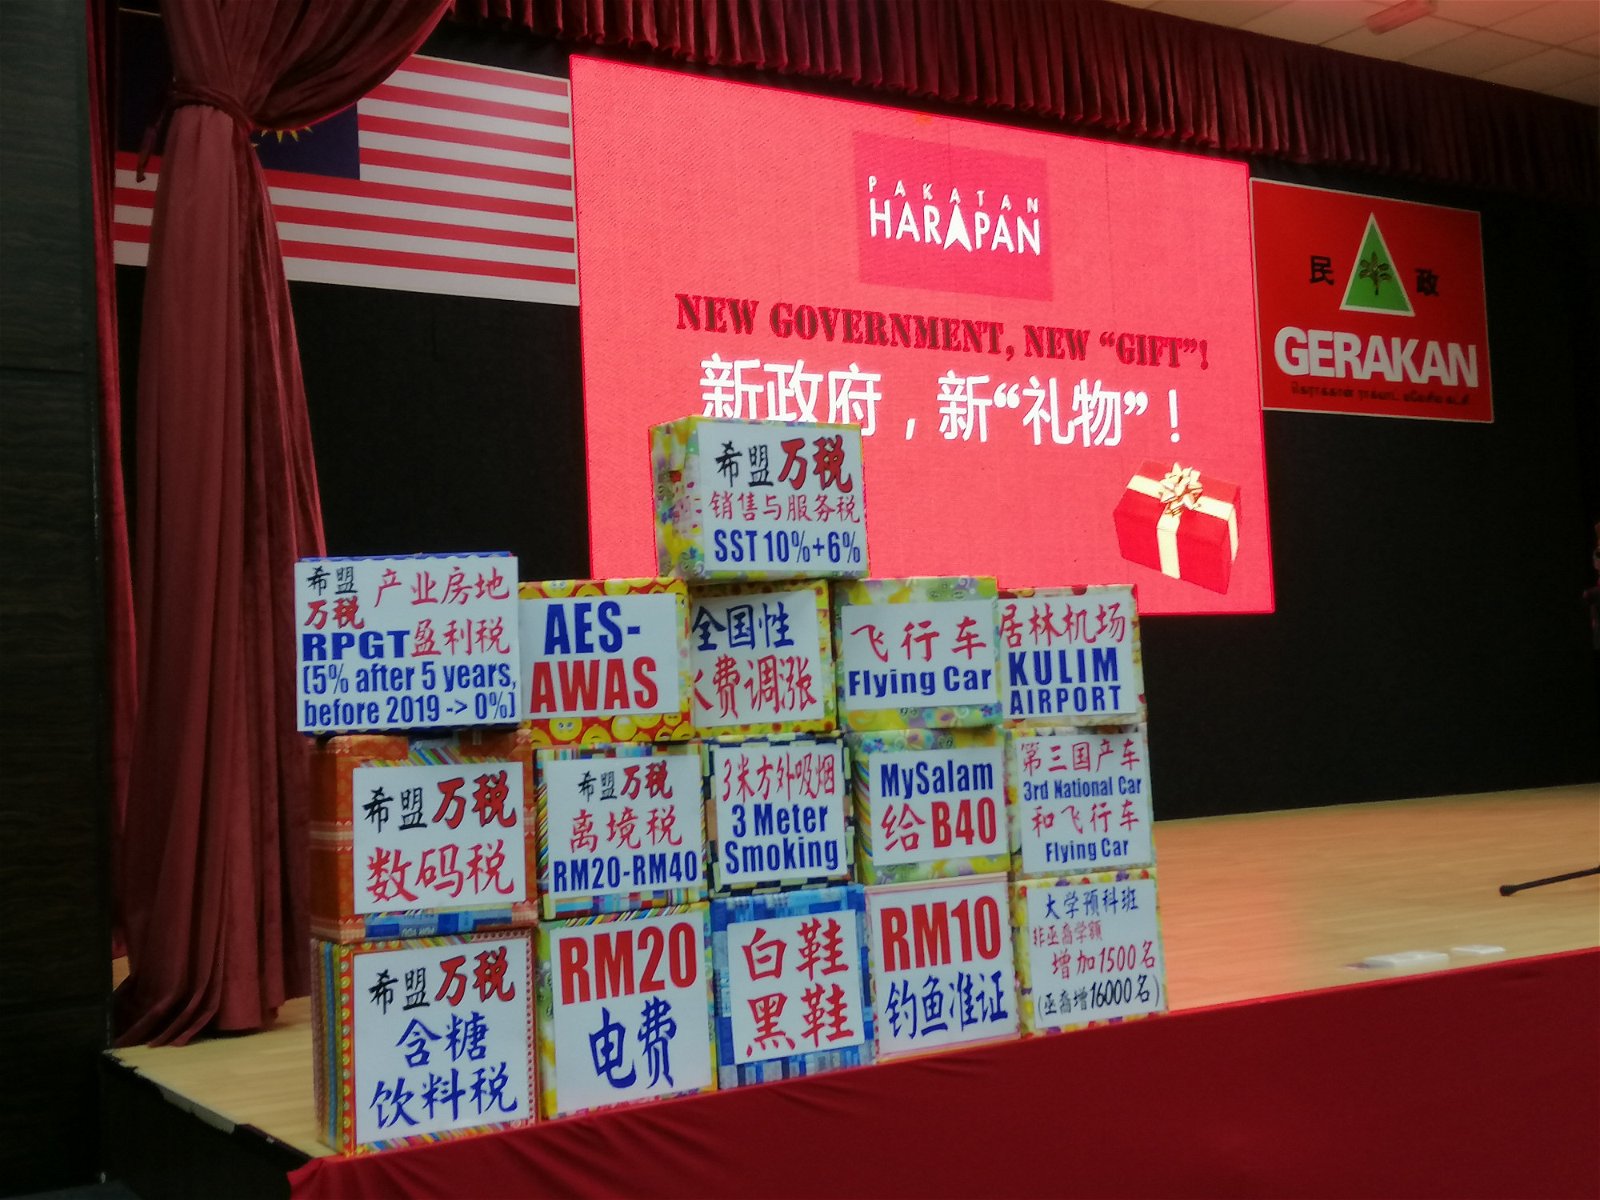 在“新政府，新礼物”记者会上，槟州民政党展示了希盟政府执政一年所给予人民的礼物，即落实的政策和计划。